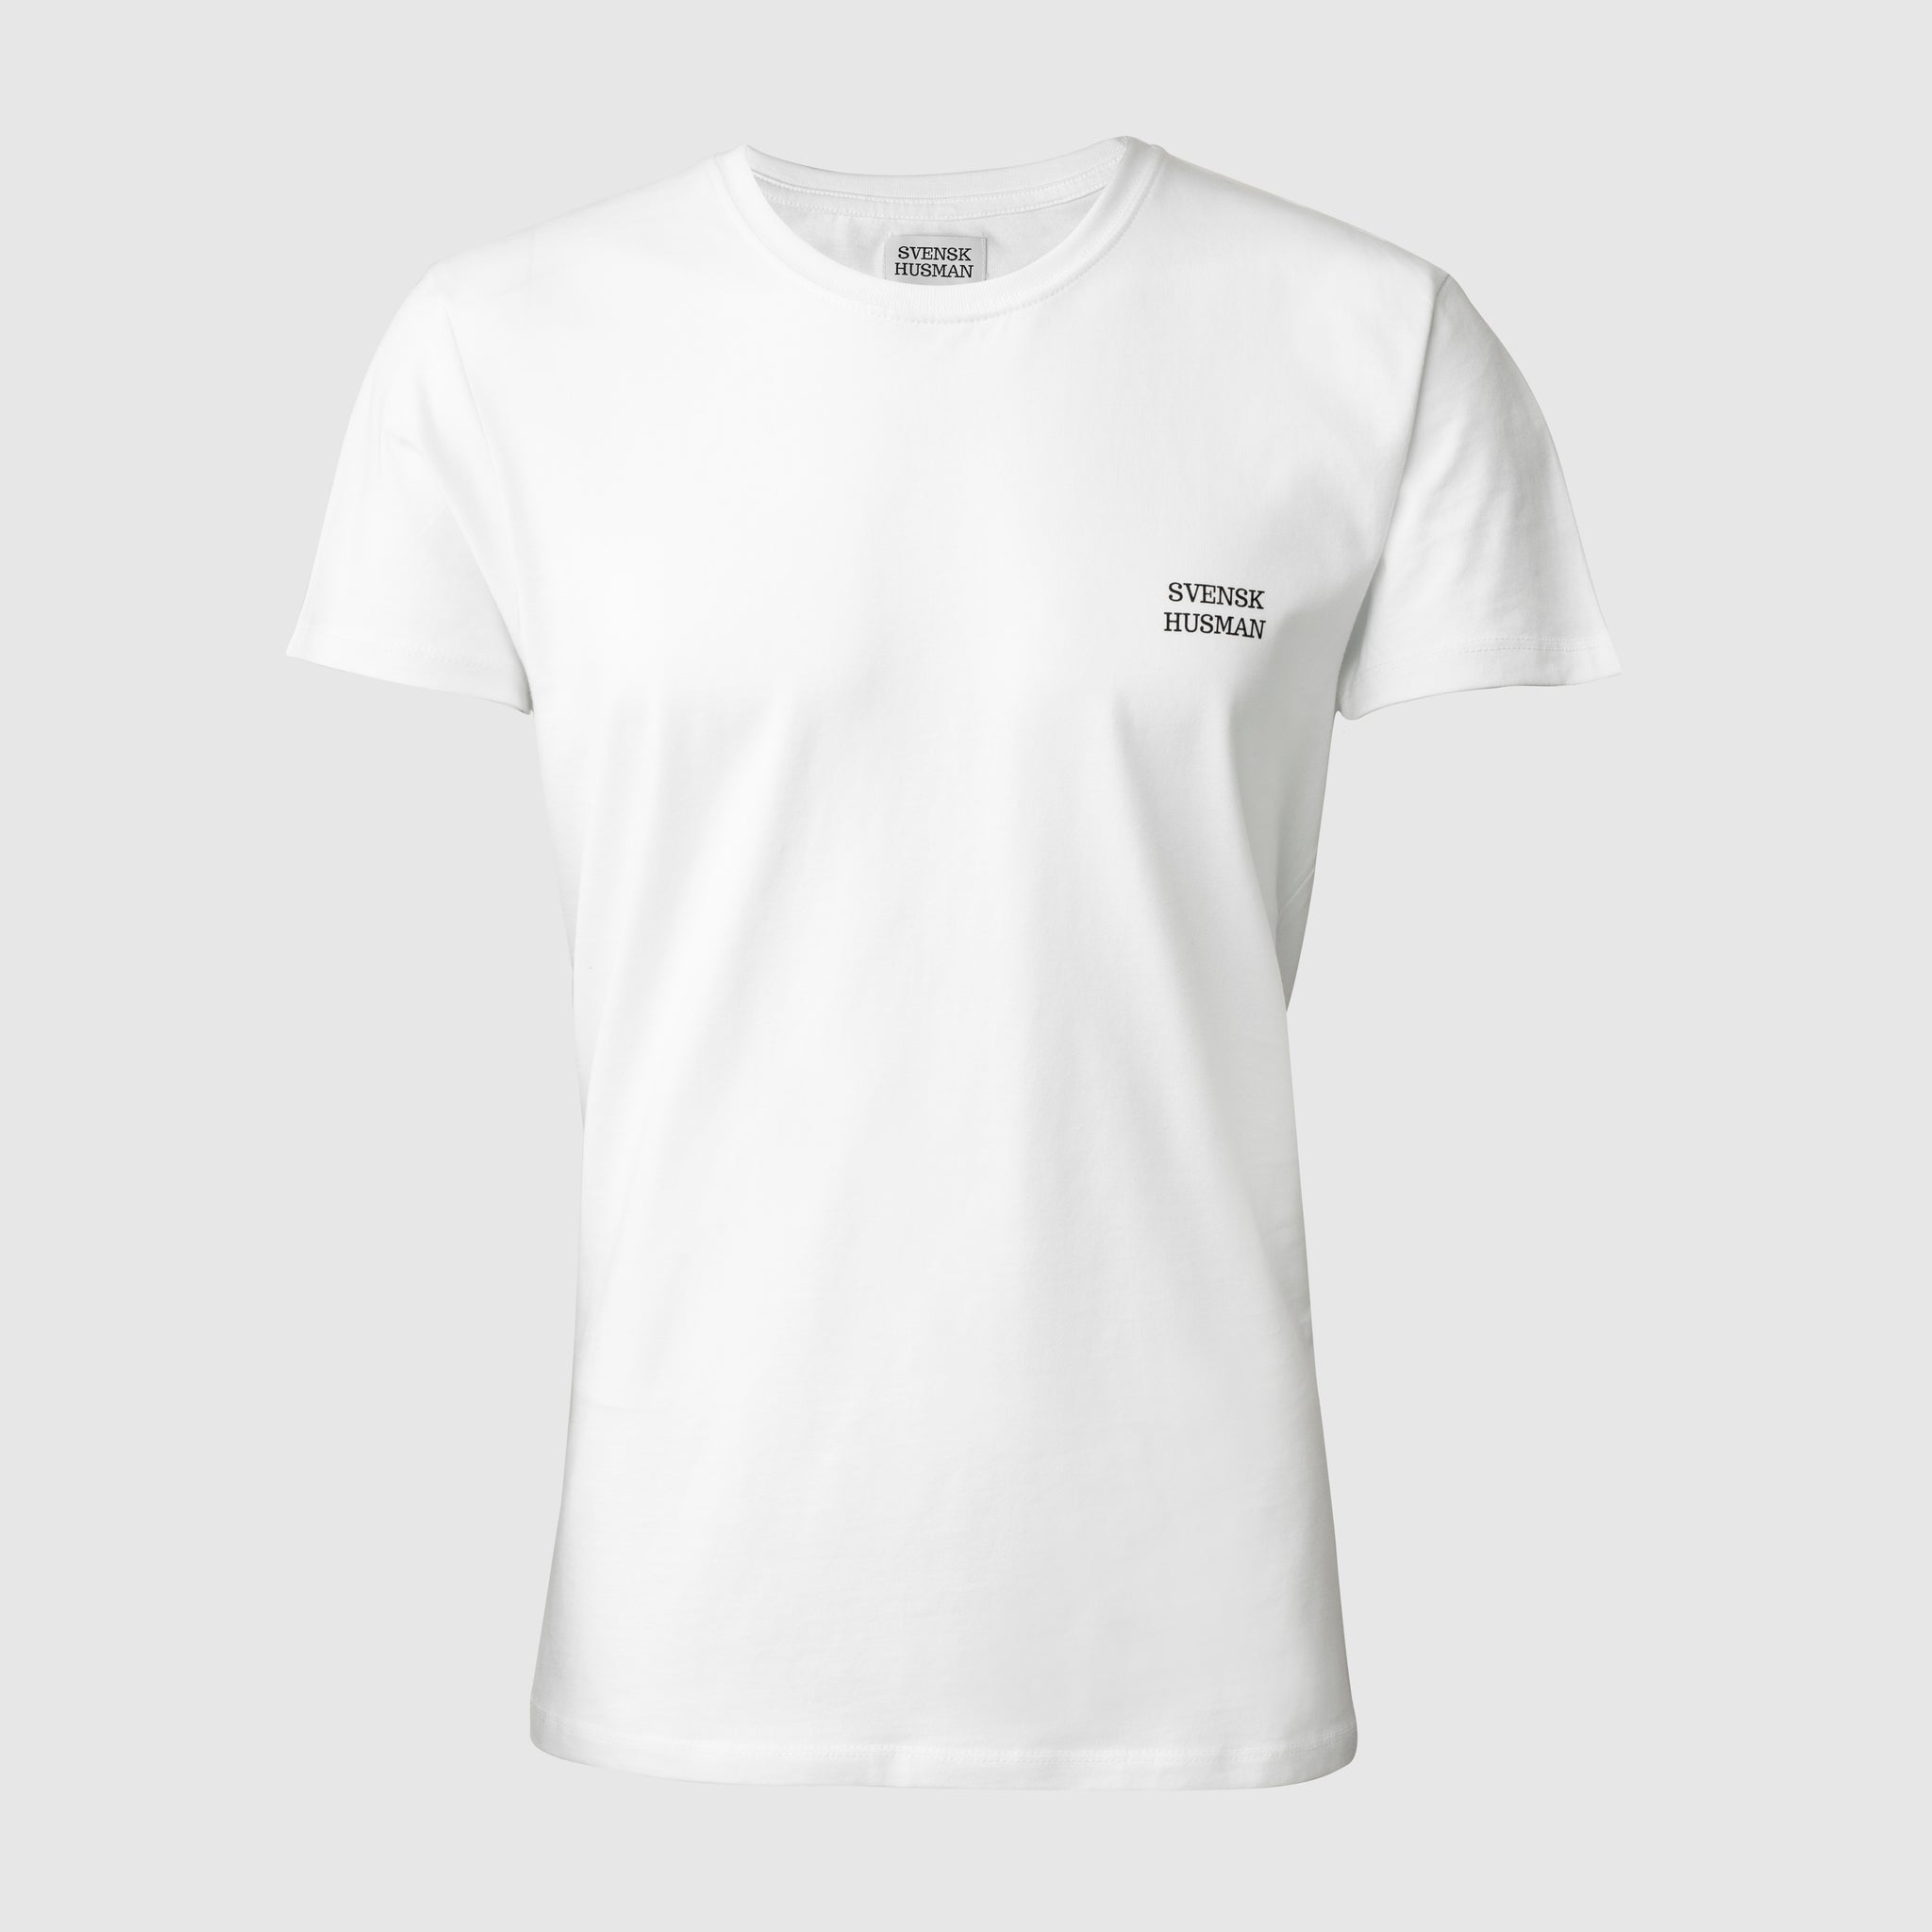 Swedish Husman - t-shirt